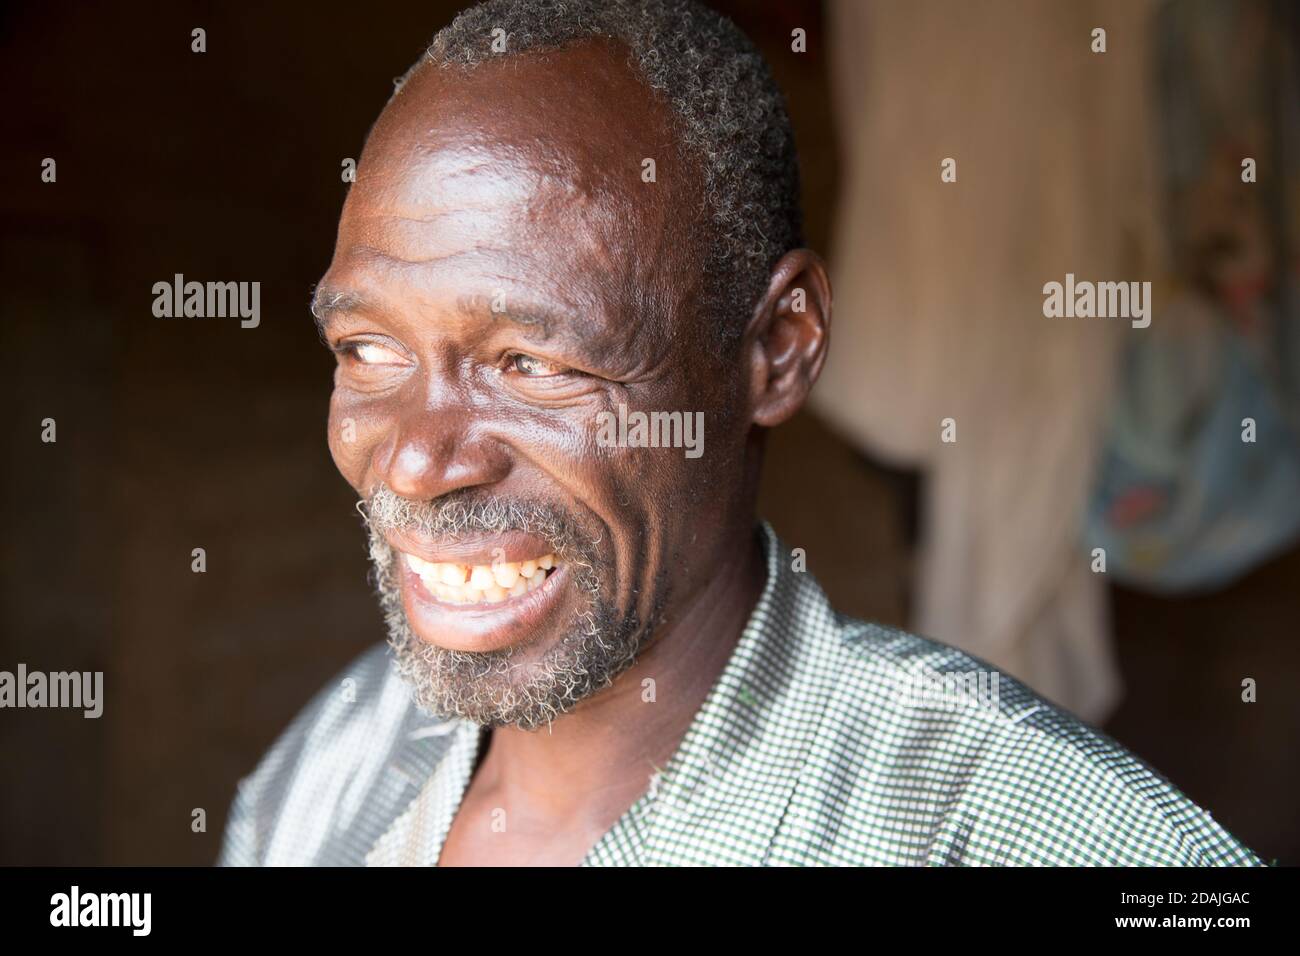 Delaba Koro, Dorf 60 km von Selingue, Mali, 27. April 2015; in diesem Dorf wurden viele Menschen vom Staudamm vertrieben. Oualama Doumbia, 56, spricht, ist Landwirt, Fischer, hunter und Sohn des früheren Chefs. Seine Erwartungen an den Staudamm wurden nicht erfüllt - er hoffte auf eine gute Gesundheitsversorgung, sauberes Wasser, Strom und eine allgemeine Verbesserung in der Landwirtschaft, Aber 30 Jahre später gibt es immer noch keinen Strom, nur eine defekte Pumpe, das medizinische Zentrum ist nicht gut ausgestattet und es gibt nur eine Grundschule für die Kinder. Seine Familie gehörte zu den ersten Siedlern des Dorfes. Es gab 500 Peop Stockfoto